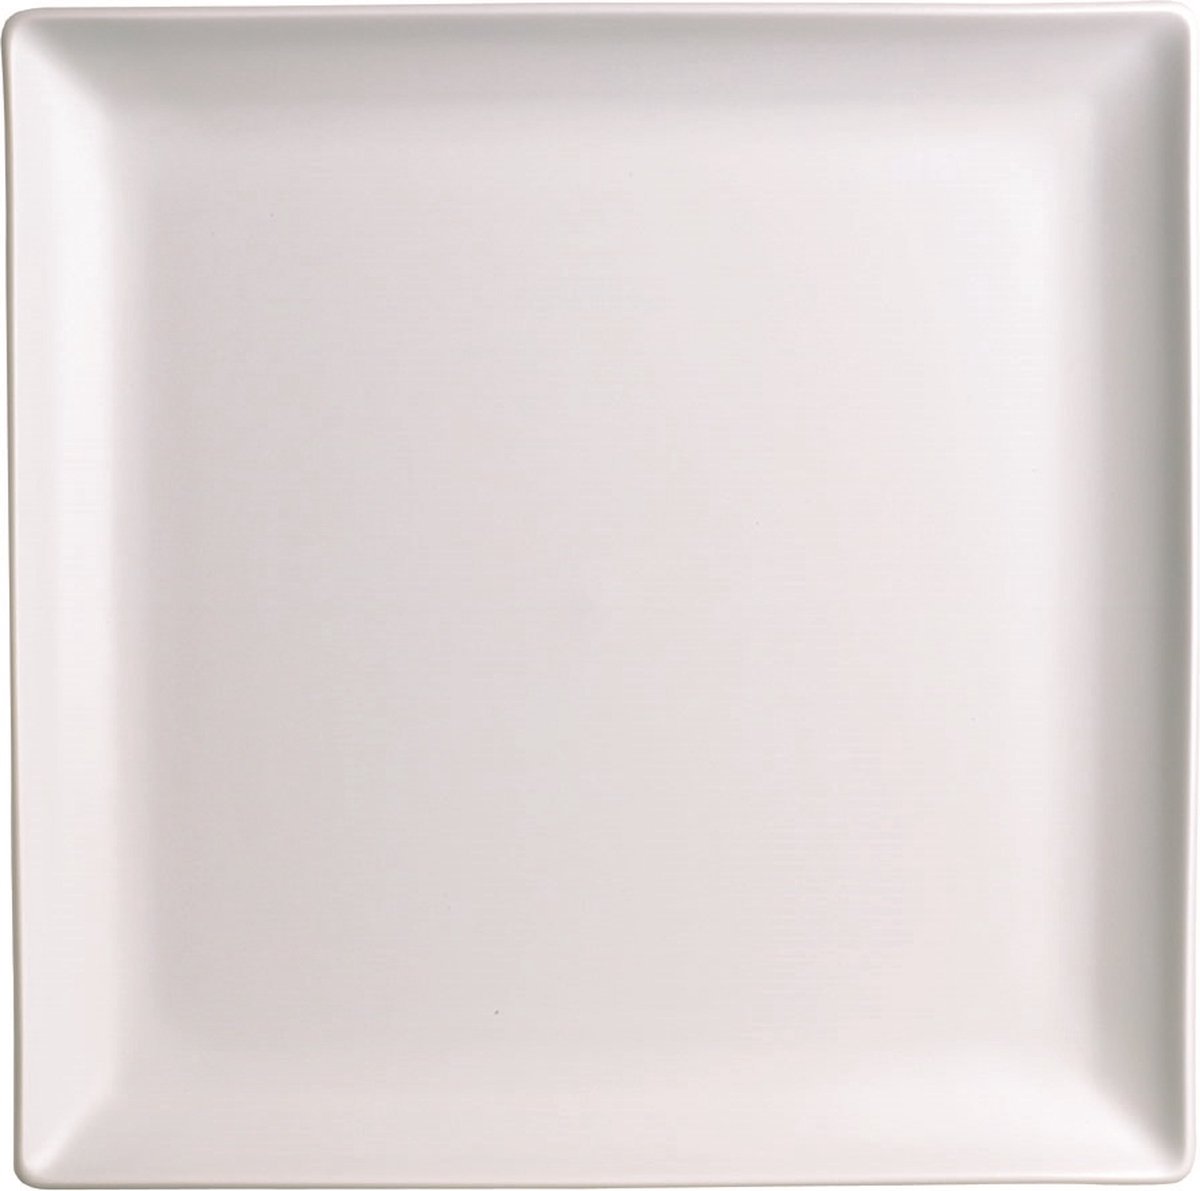 Apilco - Zen - Ontbijtbord - CADEAU tip - Vierkant - Wit - Frans - Porselein - 24.5X24.5CM - Set a 6 stuks